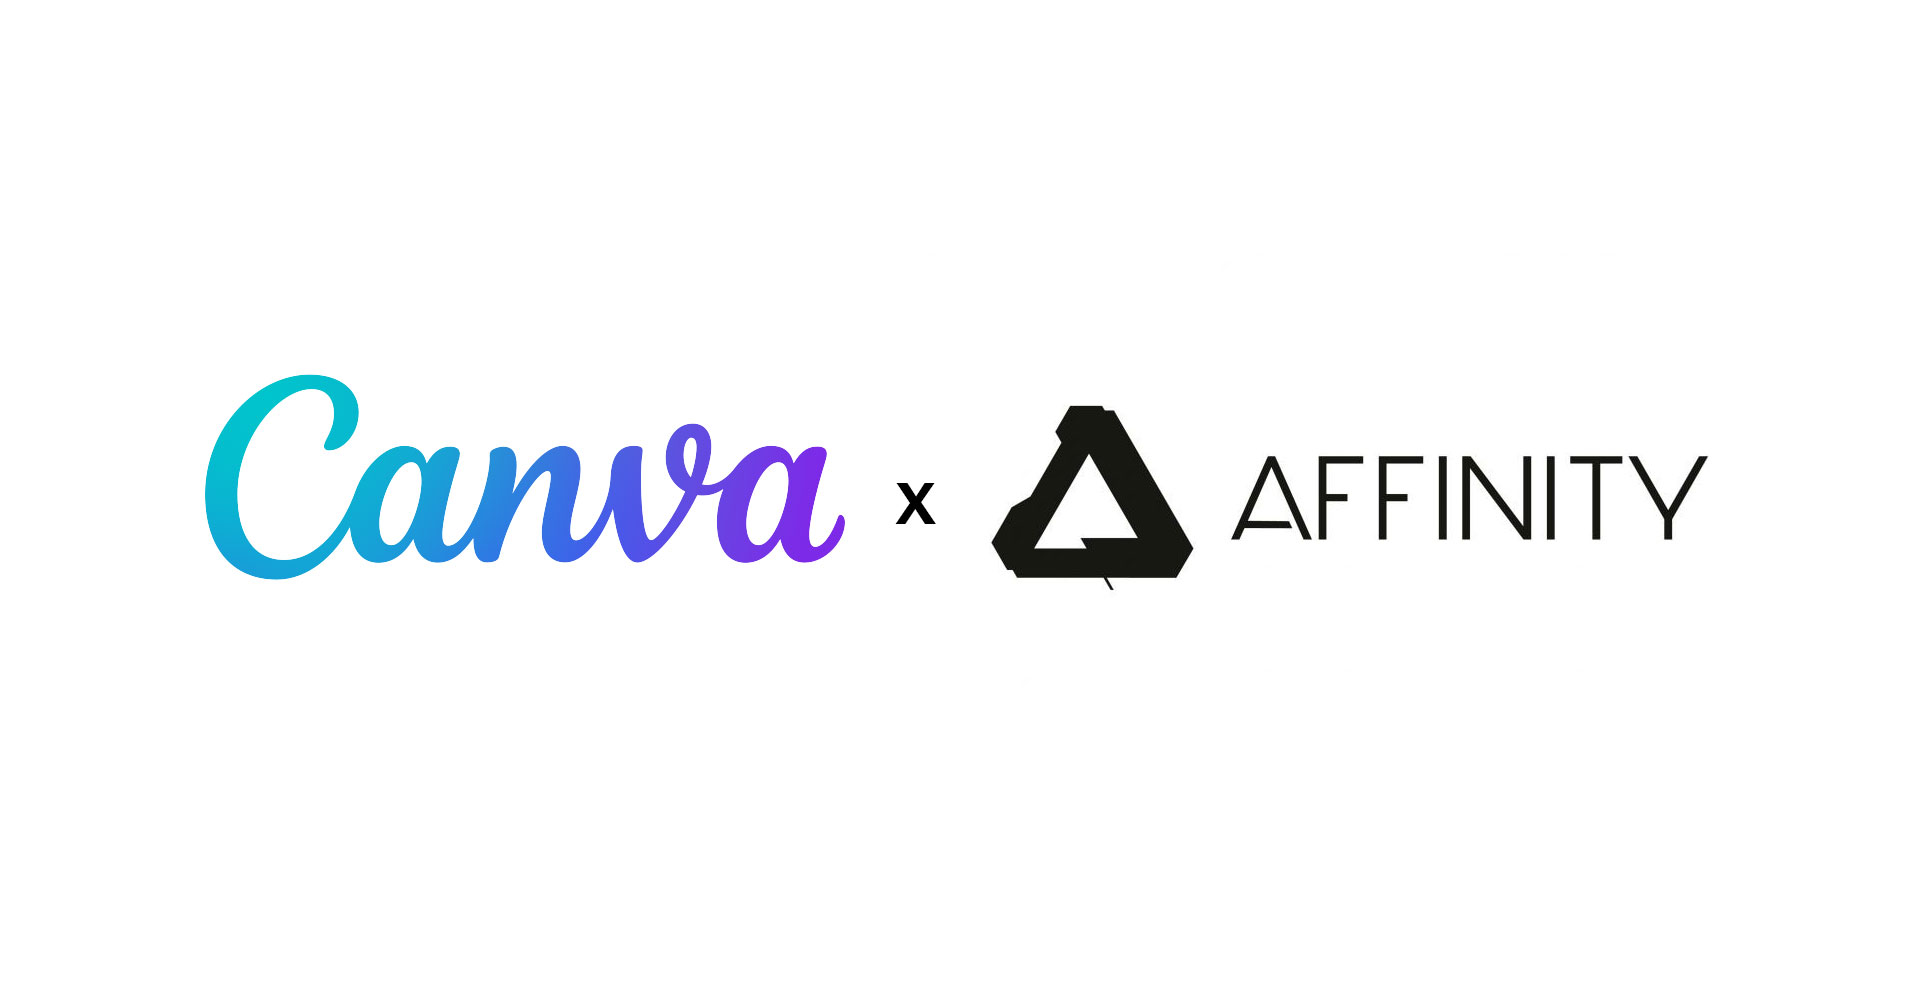 Canva เข้าซื้อกิจการ Affinity เติมเต็มช่องว่างด้วยซอร์ฟแวร์ระดับมืออาชีพ